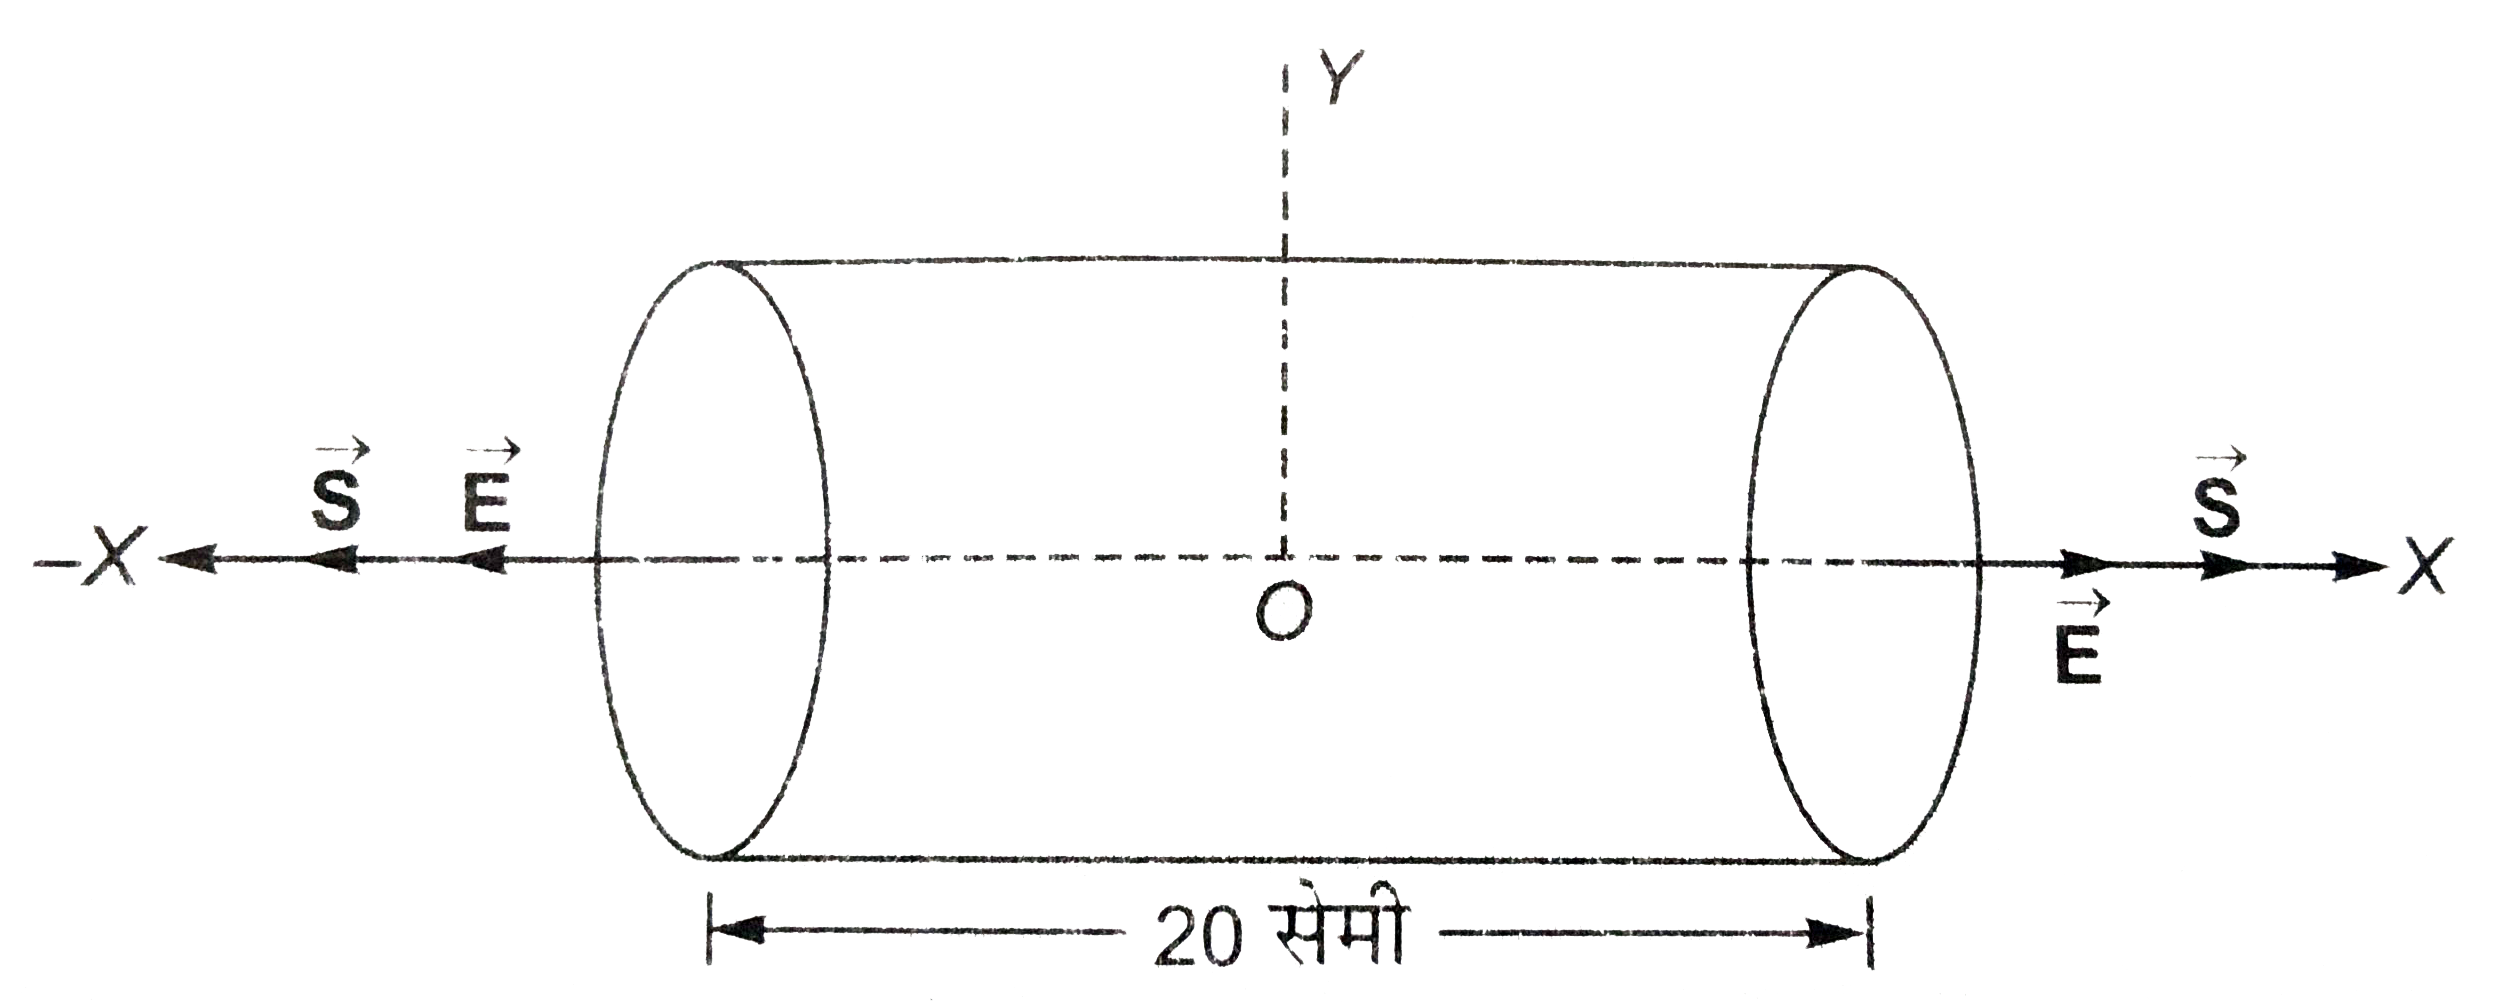 संगलन चित्र में vecE=200hati न्यूटन/कुलोम जब x gt0, vecE=-200hatj न्यूटन/कुलोम जब x lt 0,20  सेमी लम्बे तथा 5 सेमी त्रिज्या वाले बेलन का केंद्र मूल-बिंदु तथा उसकी अक्ष X-अक्ष है तो ज्ञात कीजिए-   (A) बेलन के प्रत्येक चपटे फ्लक्स से निर्गत फ्लक्स,   (B) बेलन के वक्र पृष्ठ से निर्गत फ्लक्स,   (C) बेलन से निर्गत कुल फ्लक्स,   (D) बेलना के भीतर नेट आवेश।